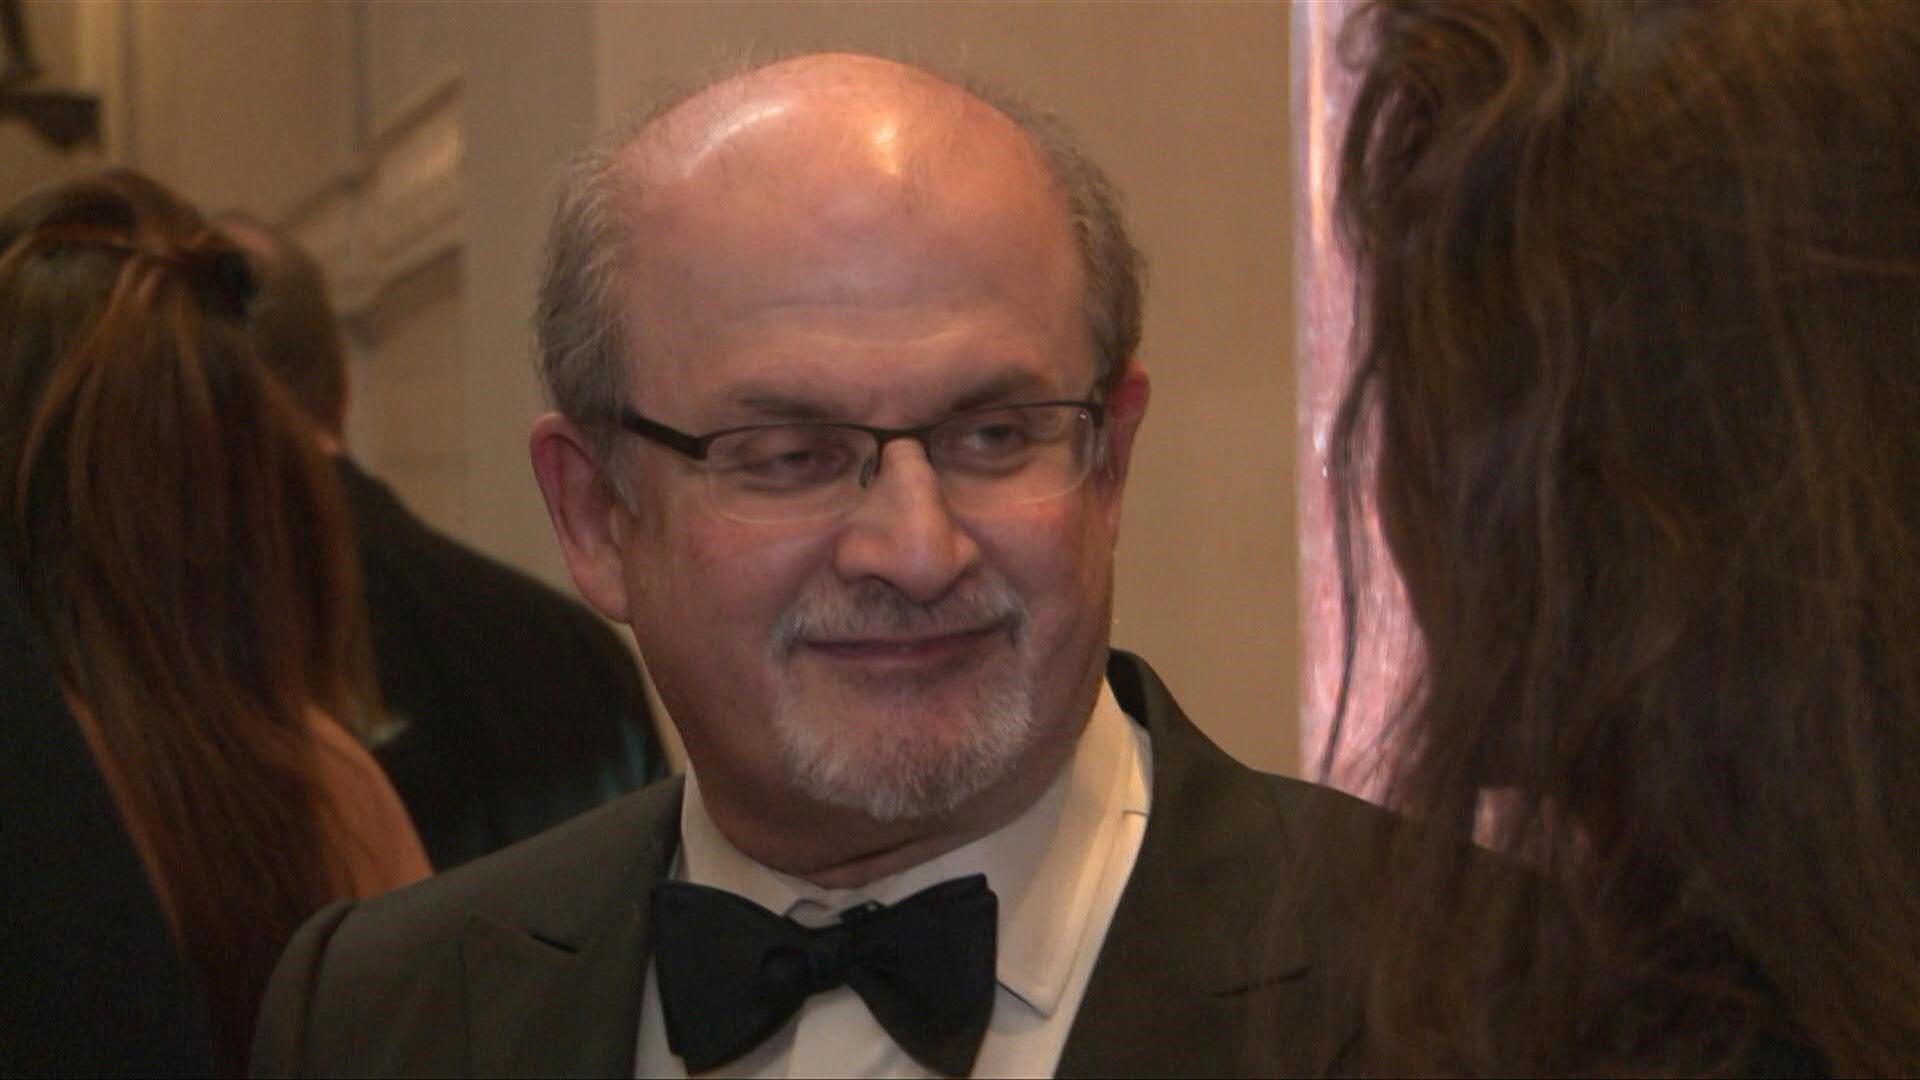 Con una selfie, Salman Rushdie mostró su “aspecto real” luego del ataque